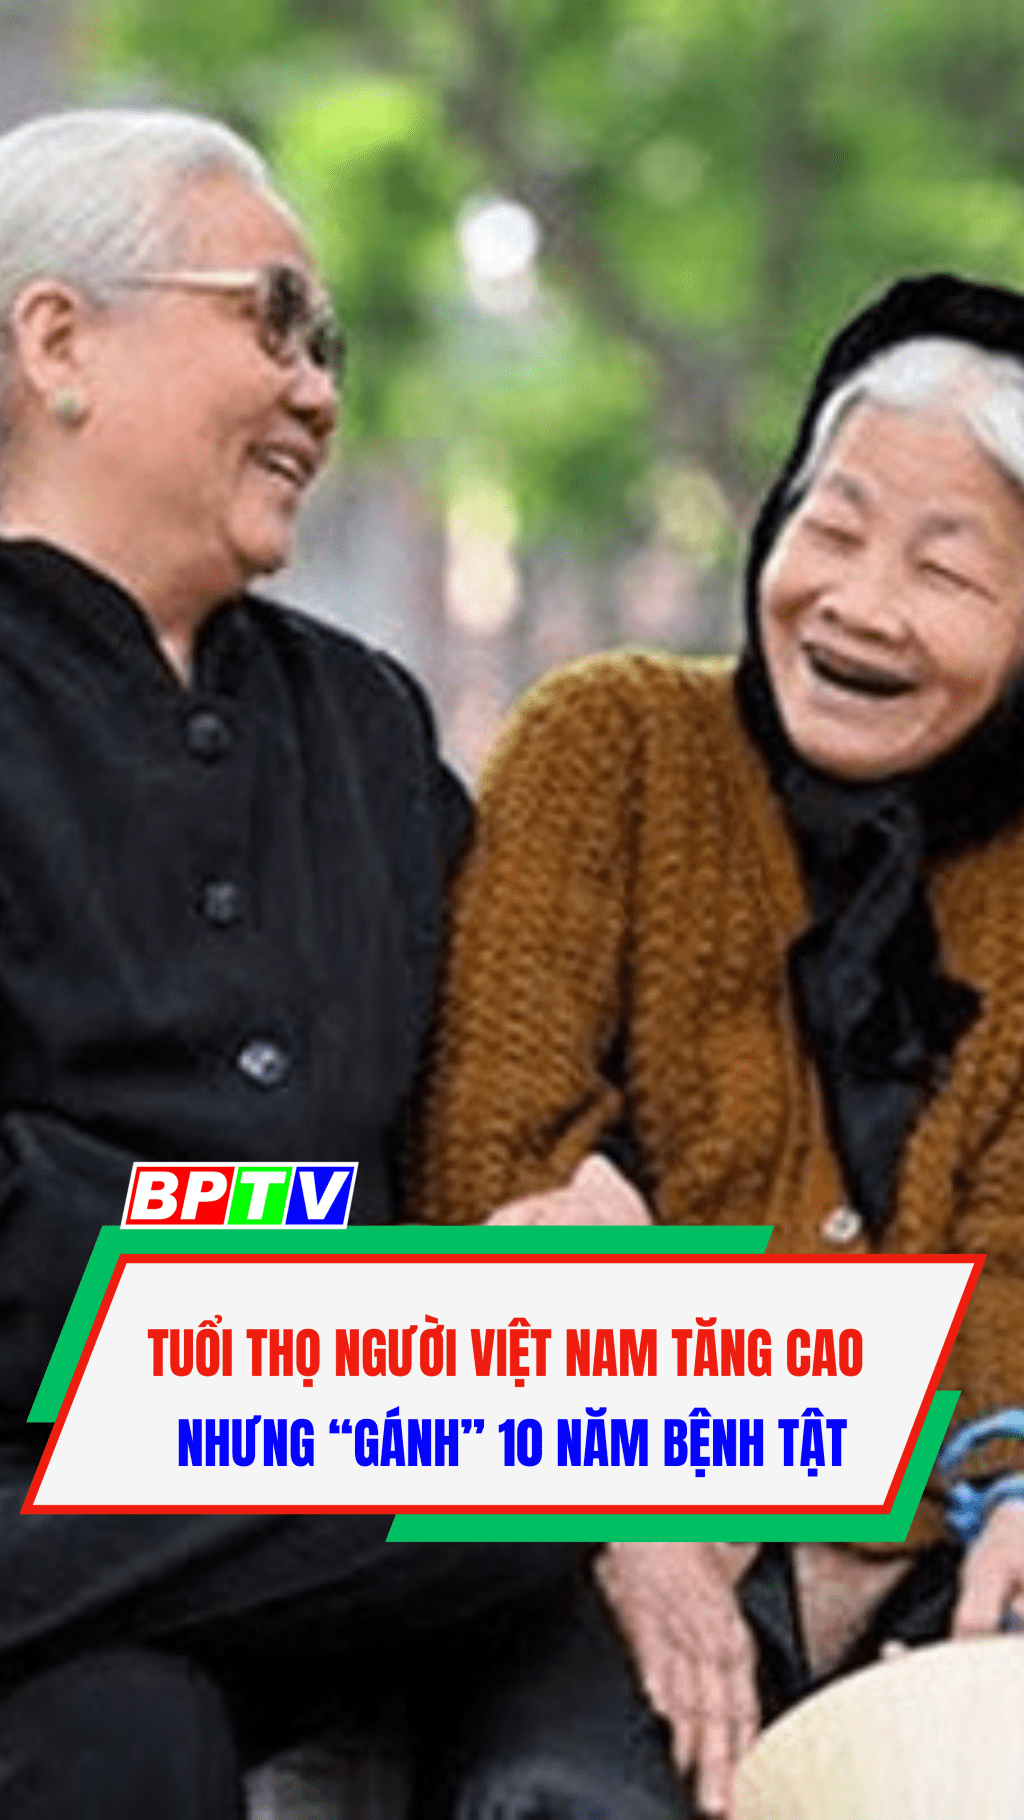 Tuổi thọ người Việt Nam tăng cao nhưng “gánh” 10 năm bệnh tật #shorts